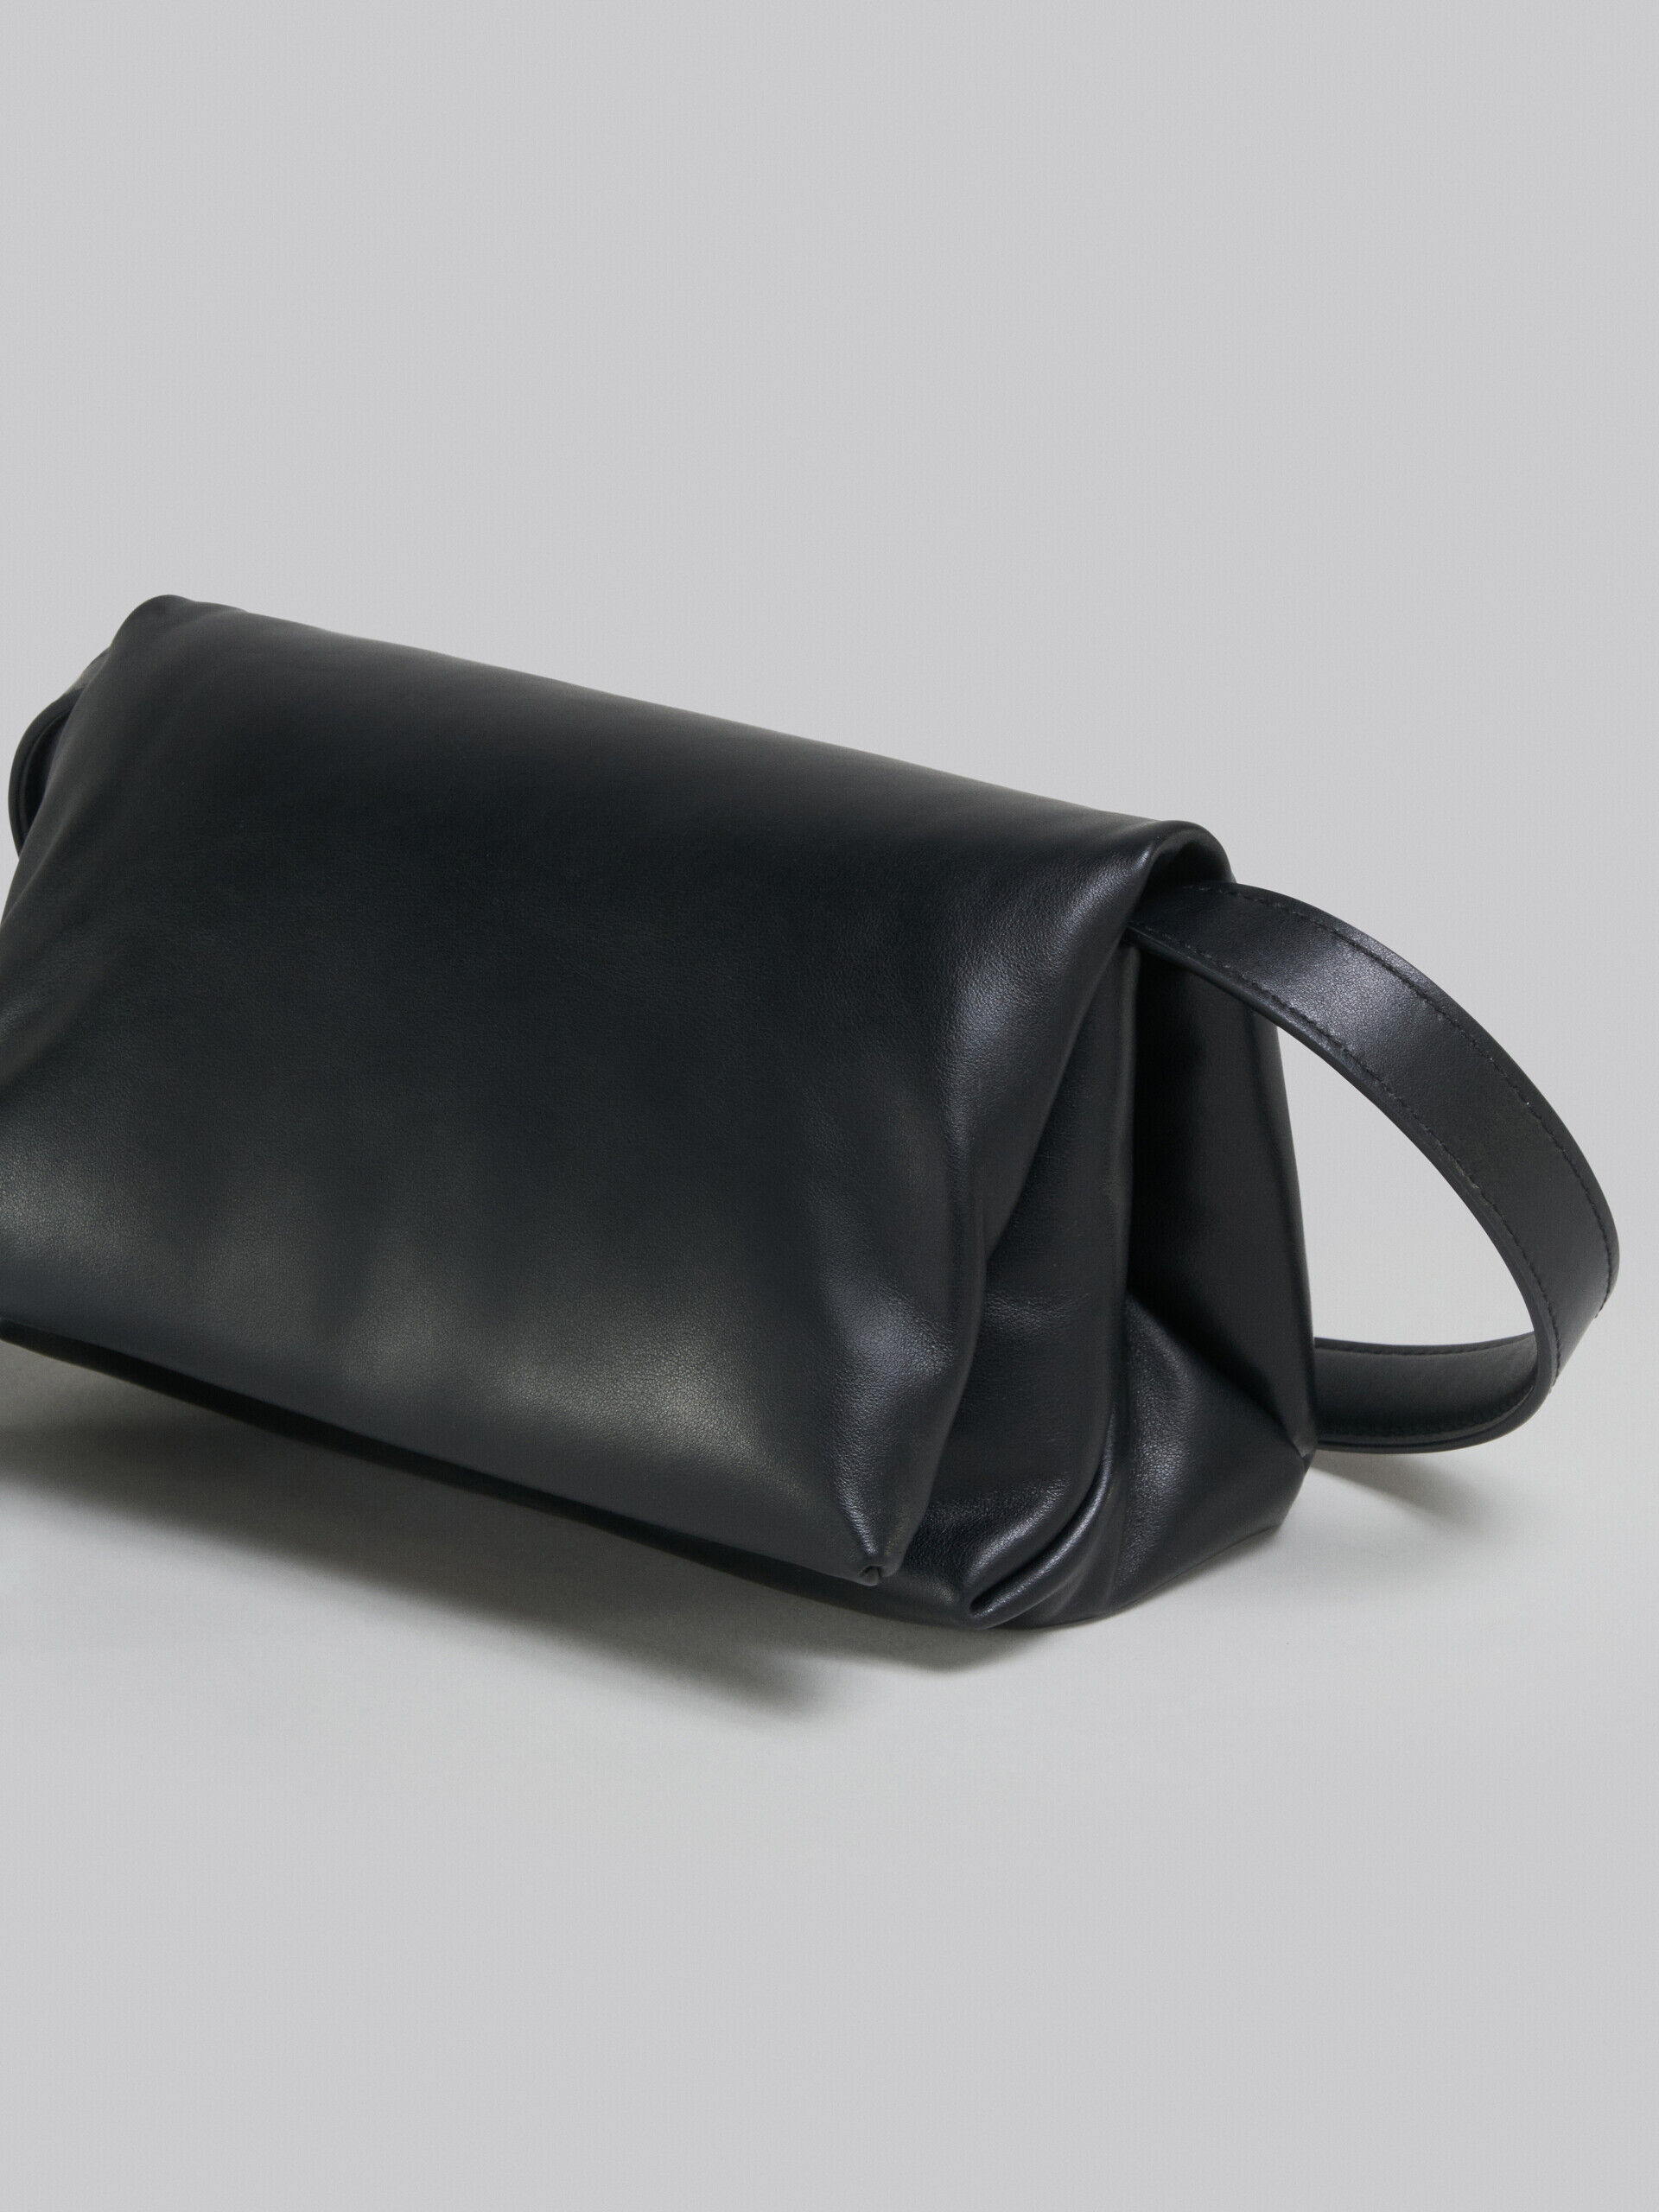 ブラック カーフスキン製 Prismaスモールバッグ | Marni